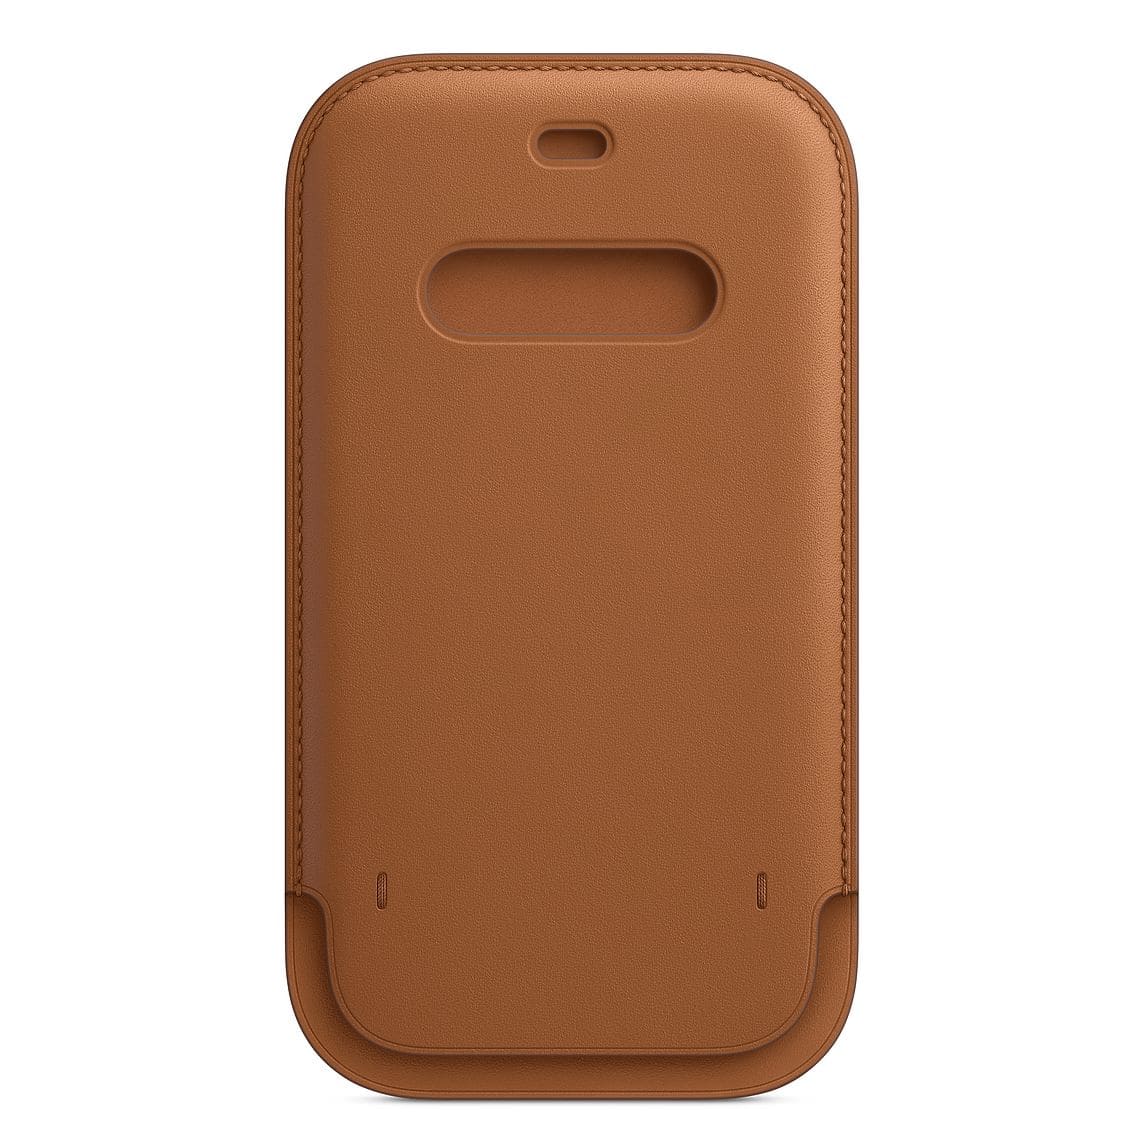 Фото — Чехол-конверт Apple MagSafe для iPhone 12/12 Pro, кожа, золотисто-коричневый